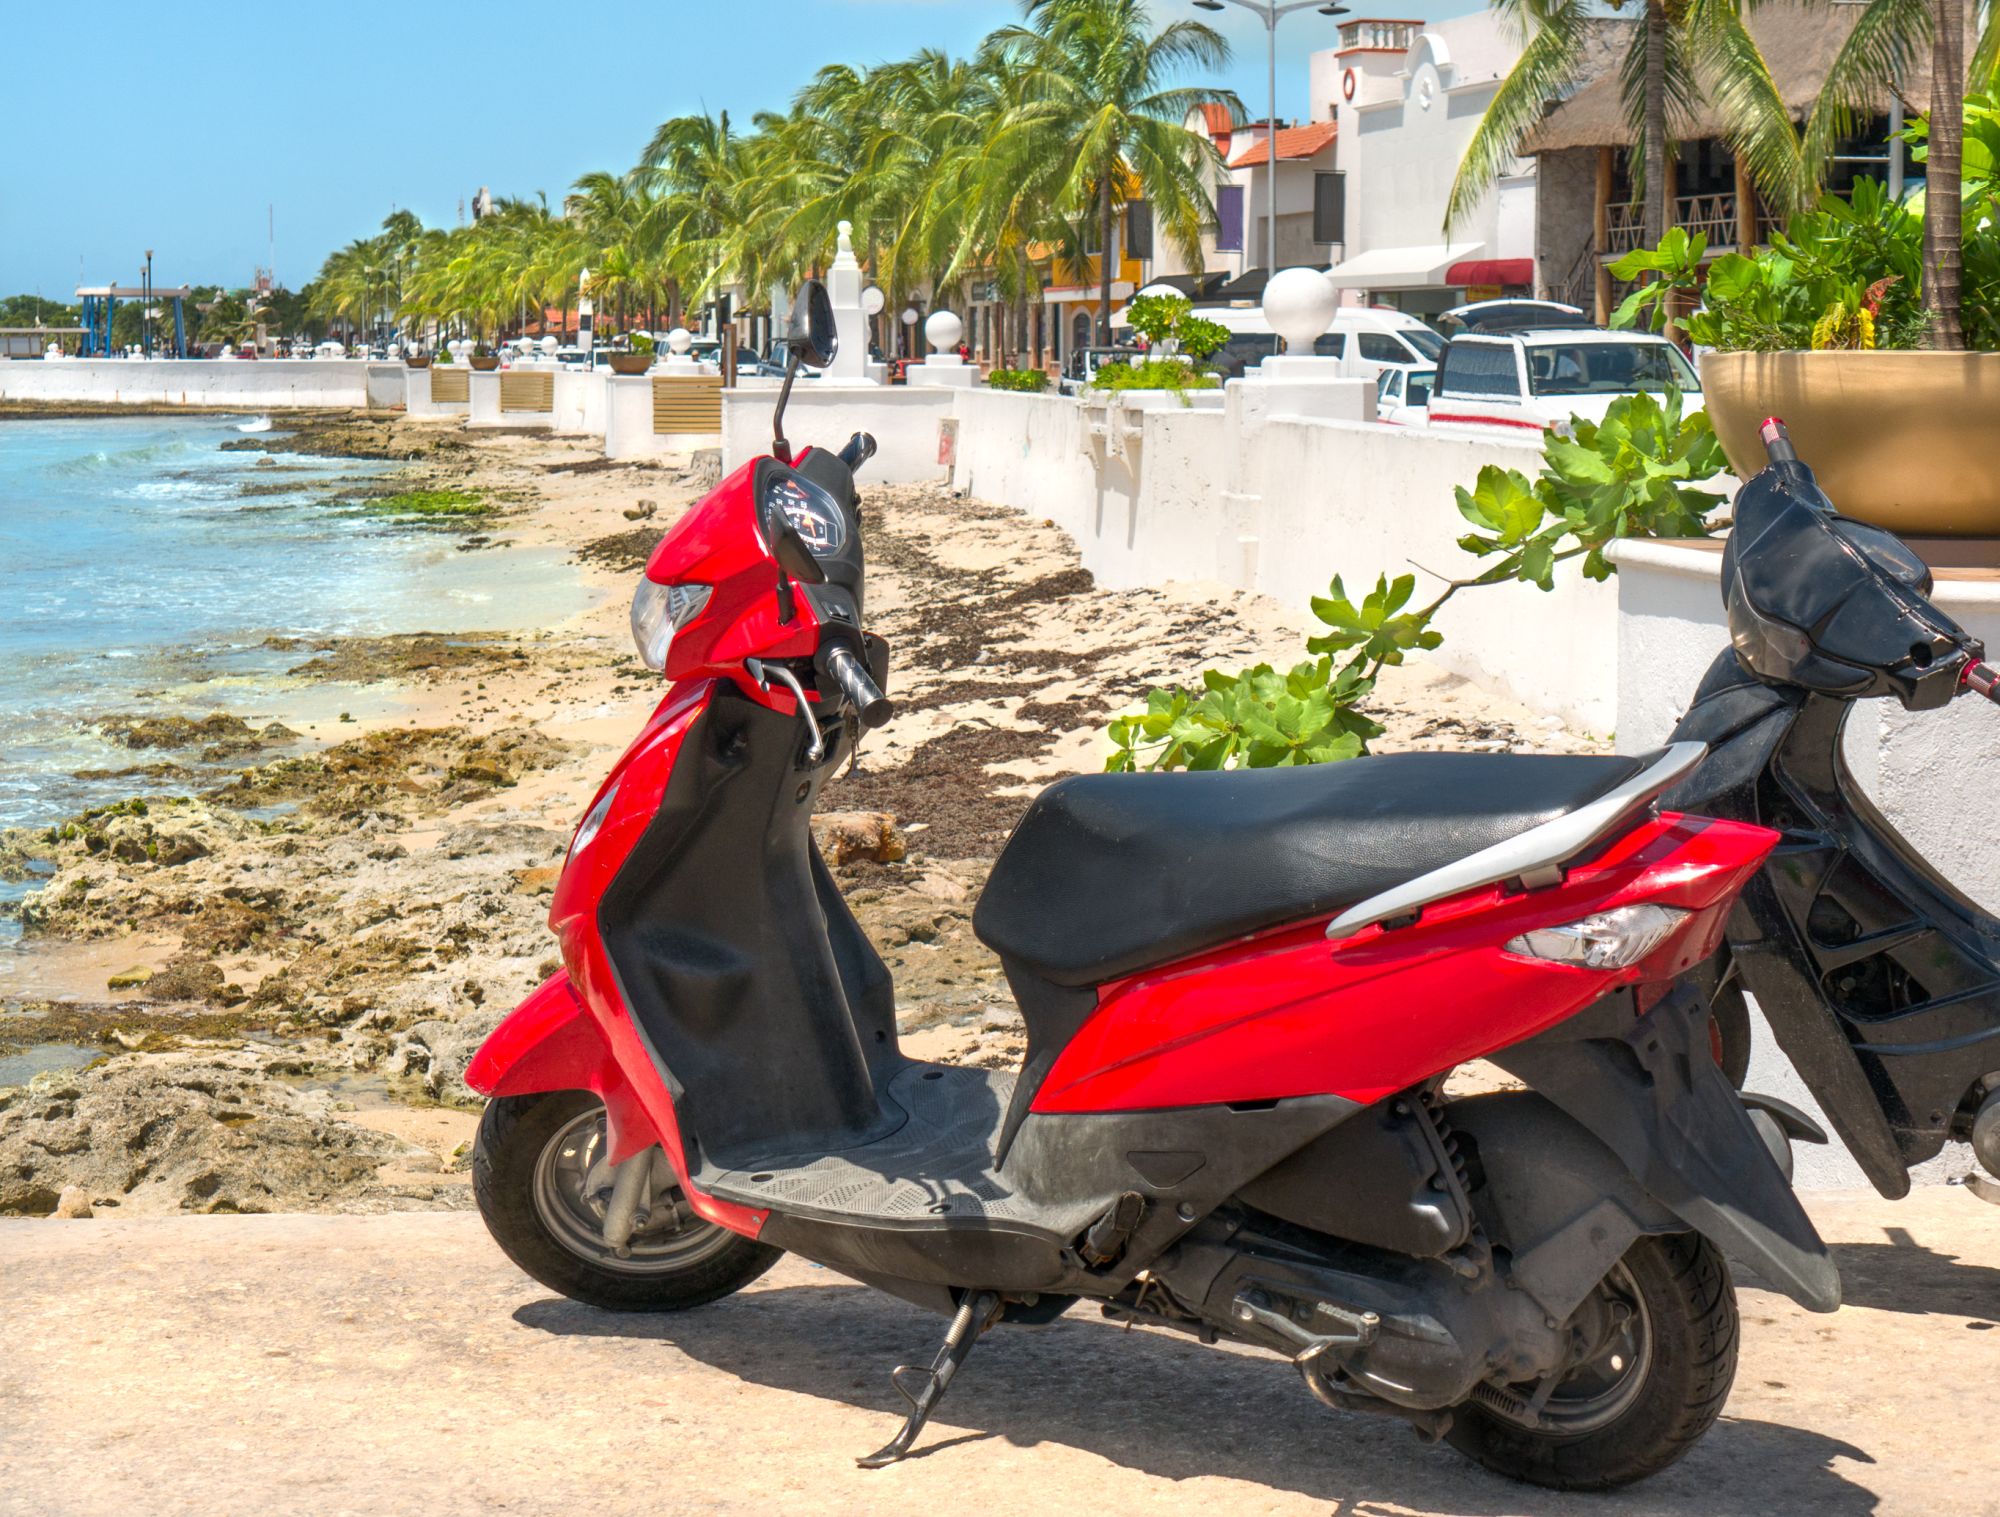 Czerwony skuter zaparkowany nieopodal plaży.